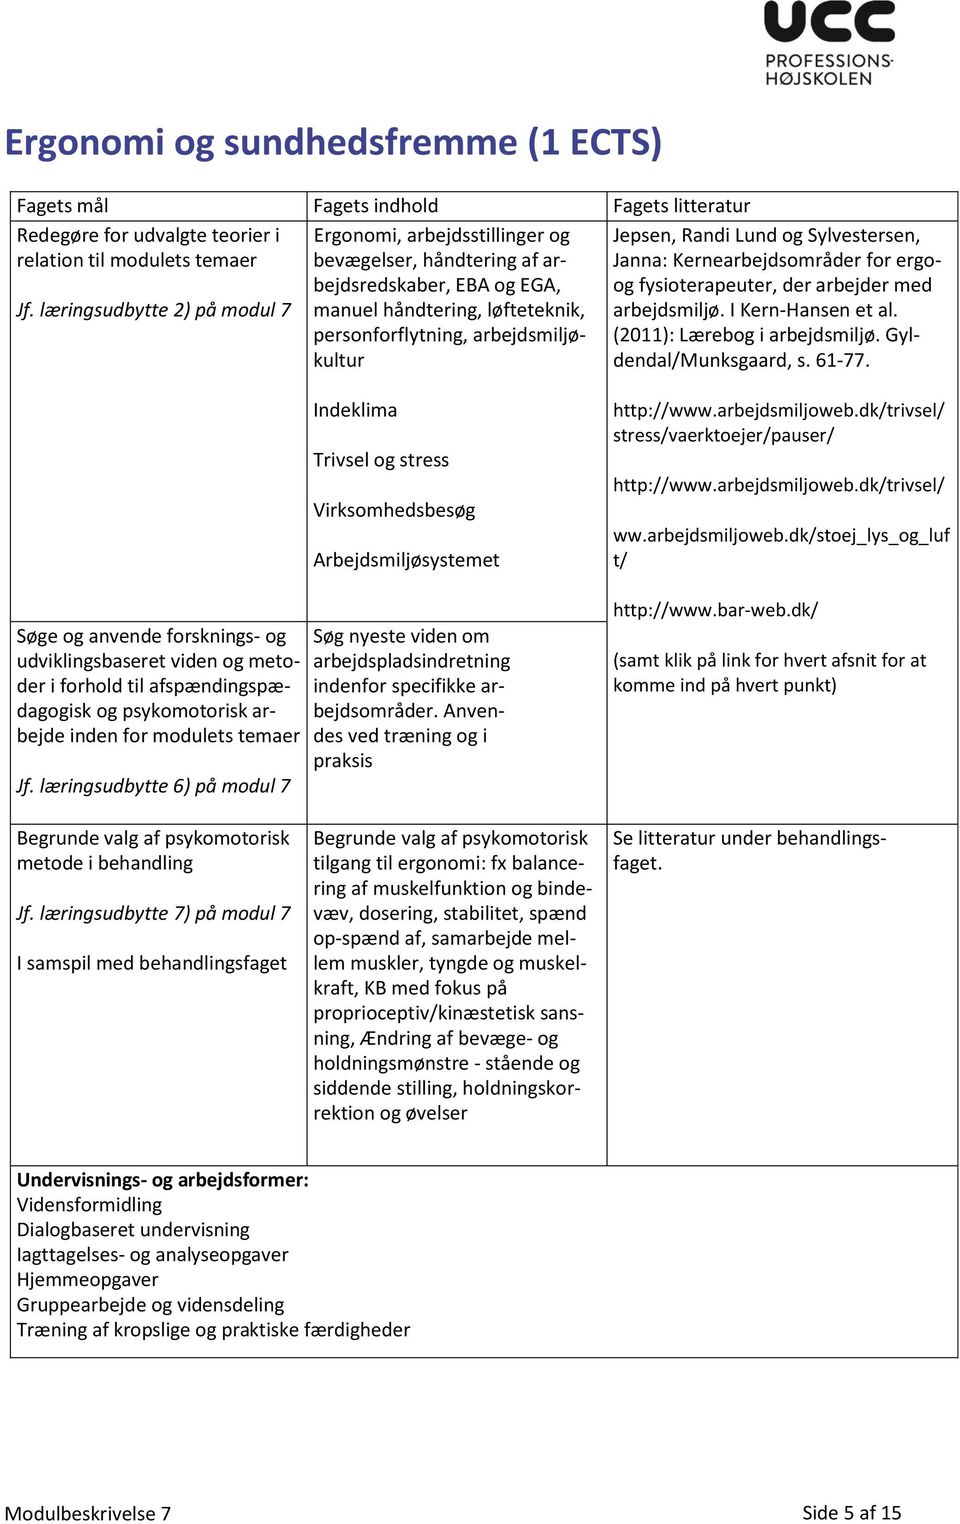 Lund og Sylvestersen, Janna: Kernearbejdsområder for ergoog fysioterapeuter, der arbejder med arbejdsmiljø. I Kern-Hansen et al. (2011): Lærebog i arbejdsmiljø. Gyldendal/Munksgaard, s. 61-77.